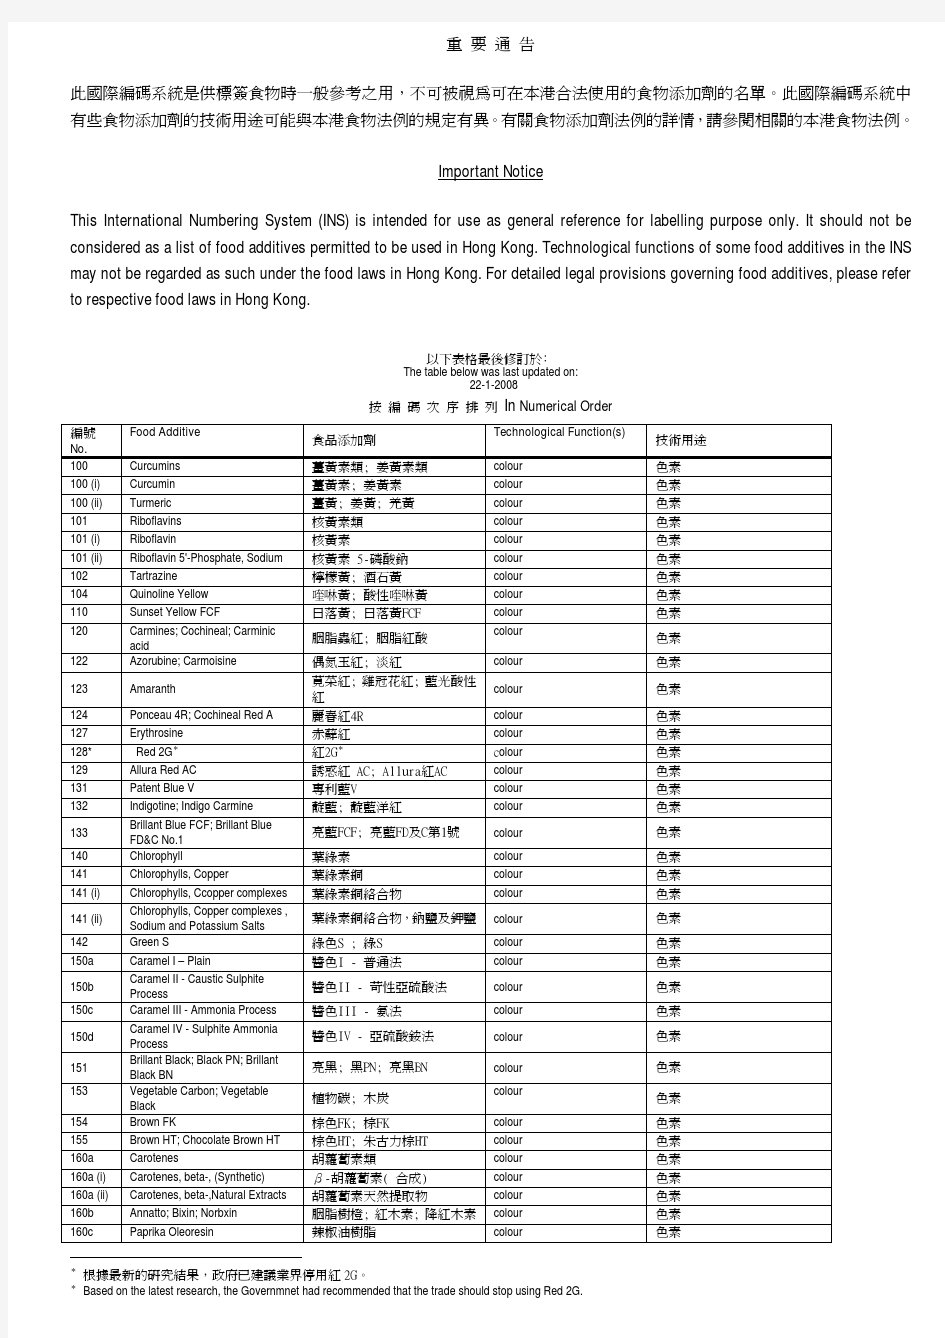 香港添加剂国际编码对应表